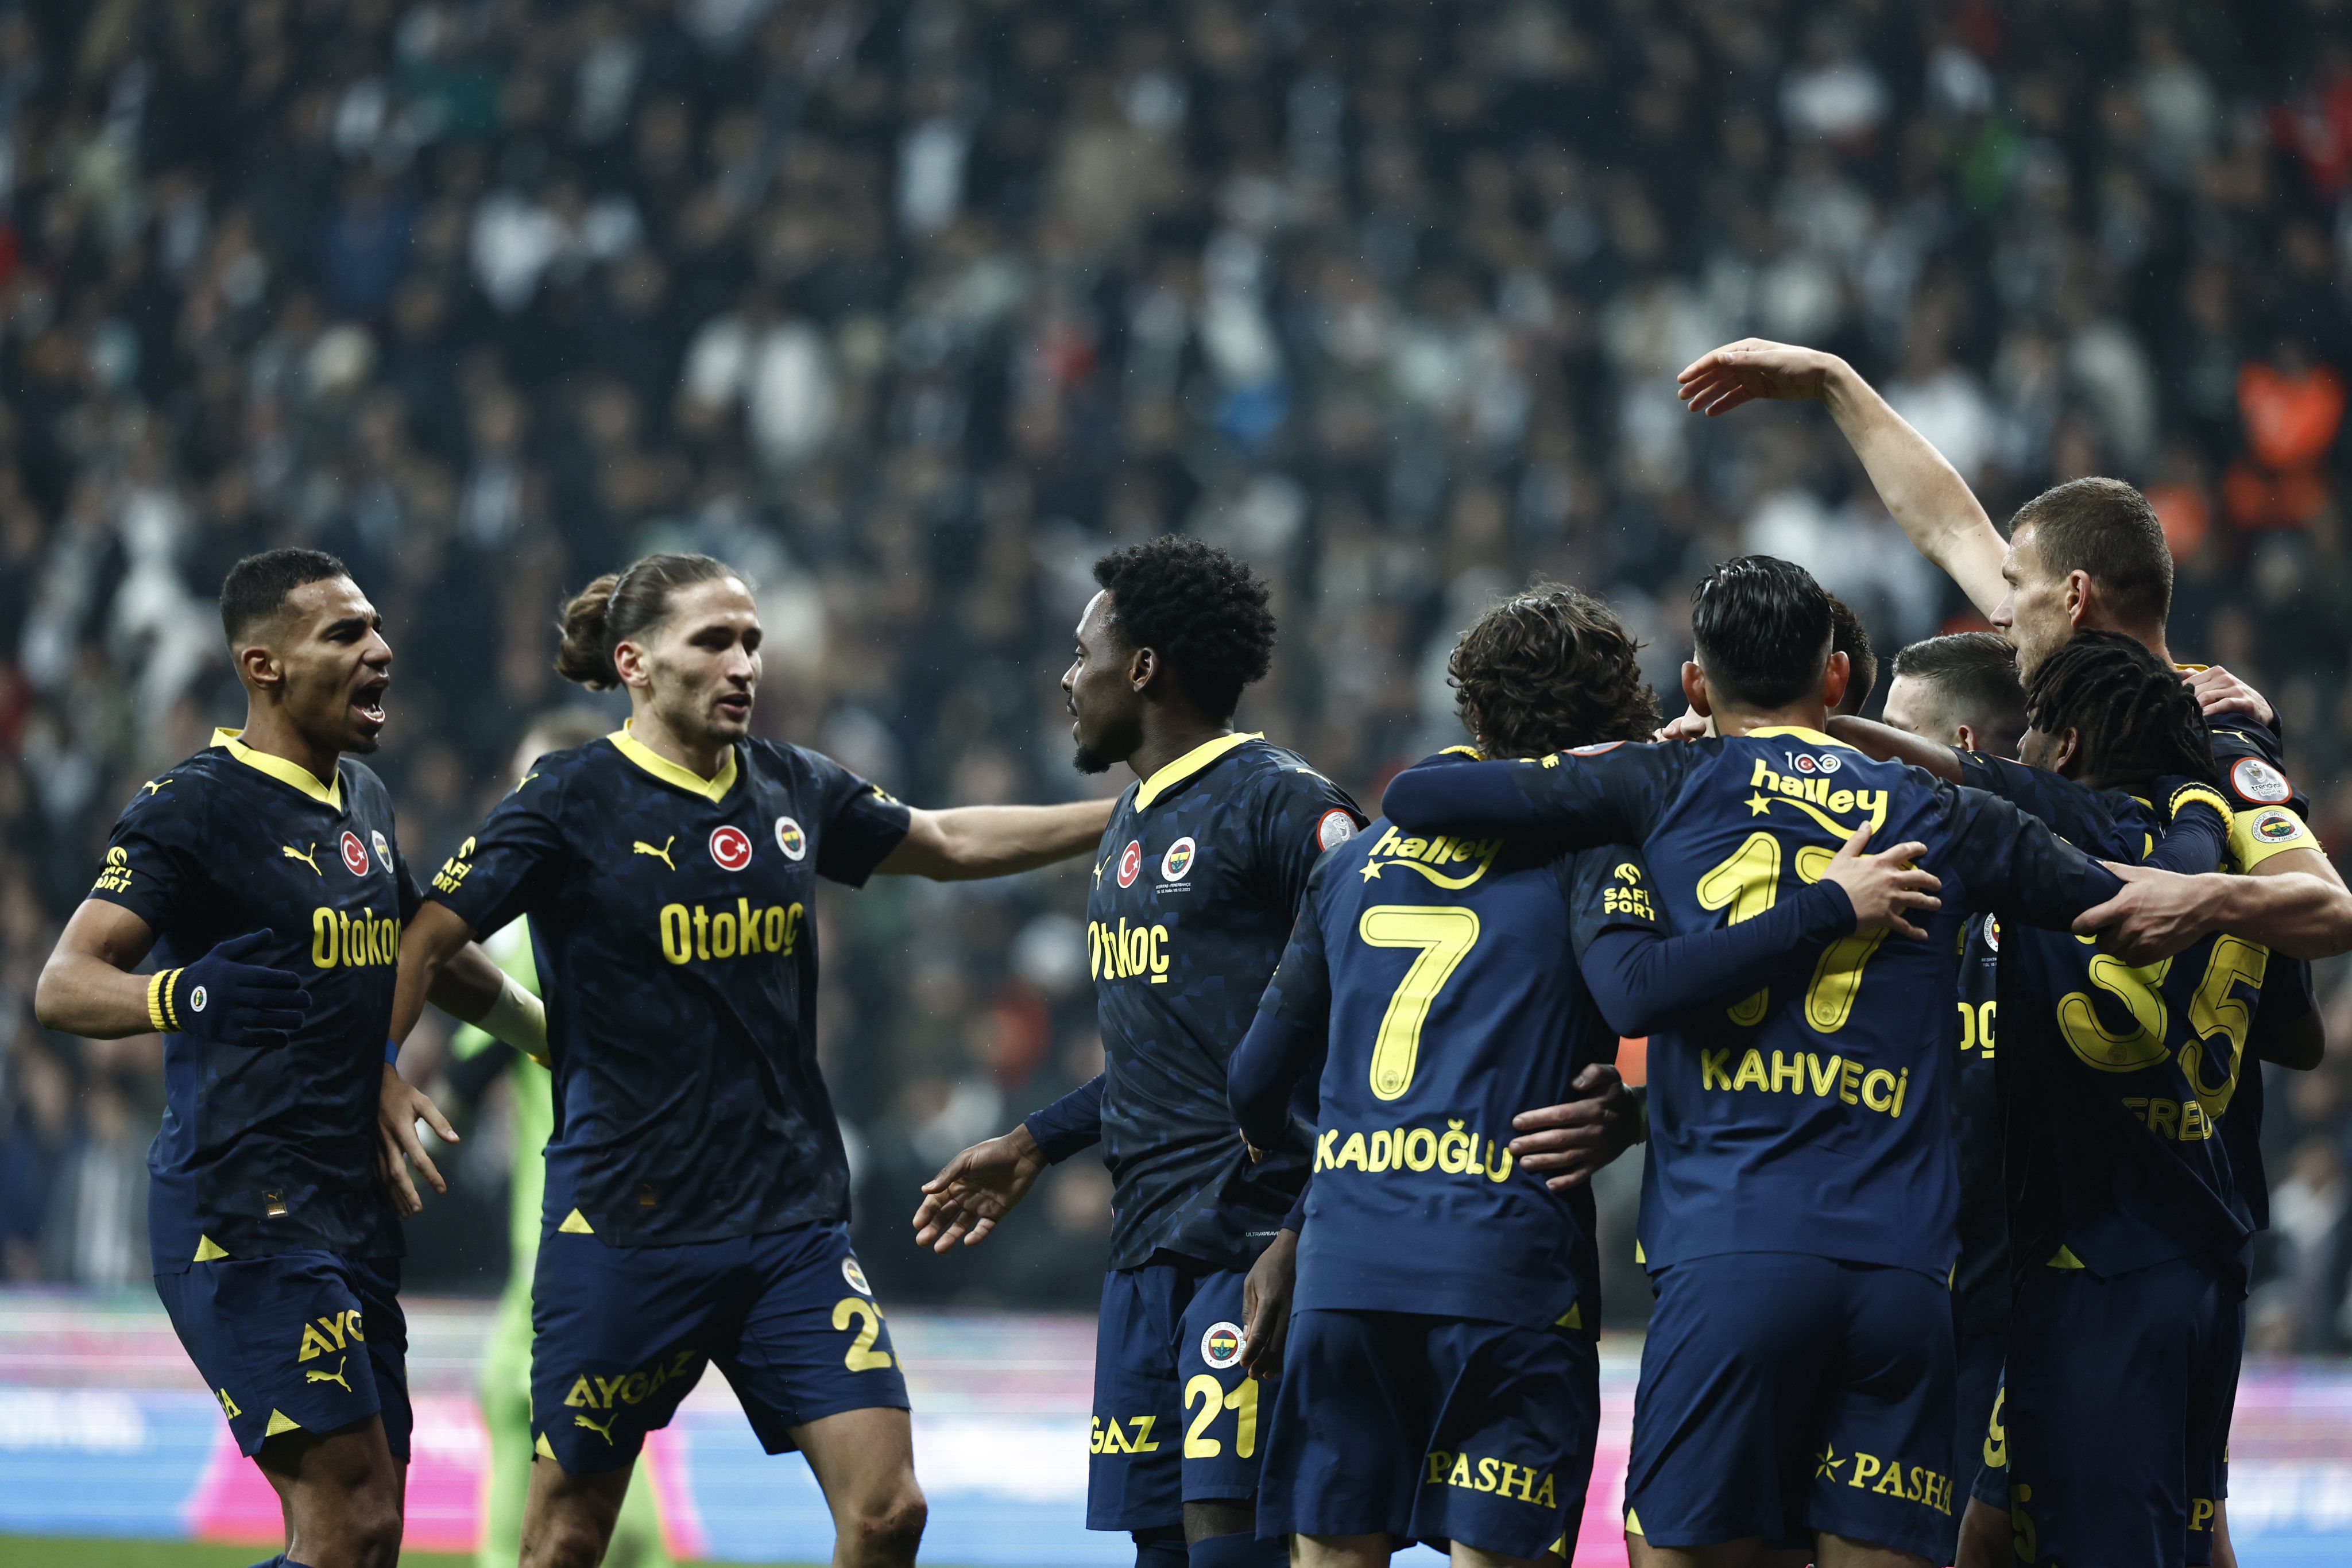 Fenerbahçe estreia na Liga Turca com vitória sobre o Besiktas